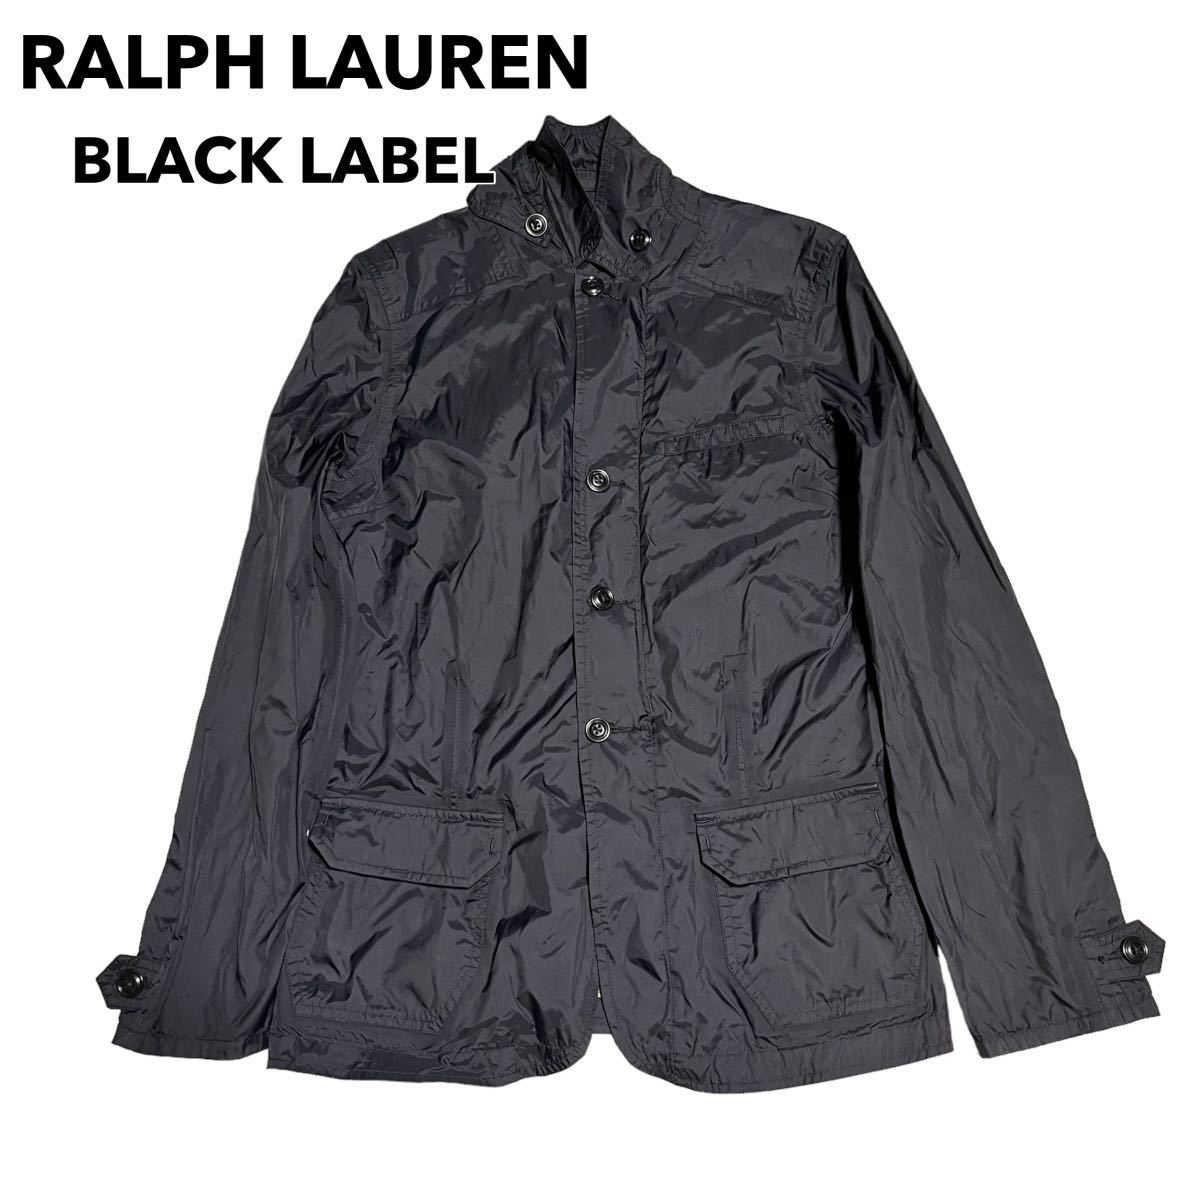 RALPH LAUREN BLACK LABEL ラルフローレンブラックレーベル ナイロン ミリタリージャケット スタンドカラー M_画像1